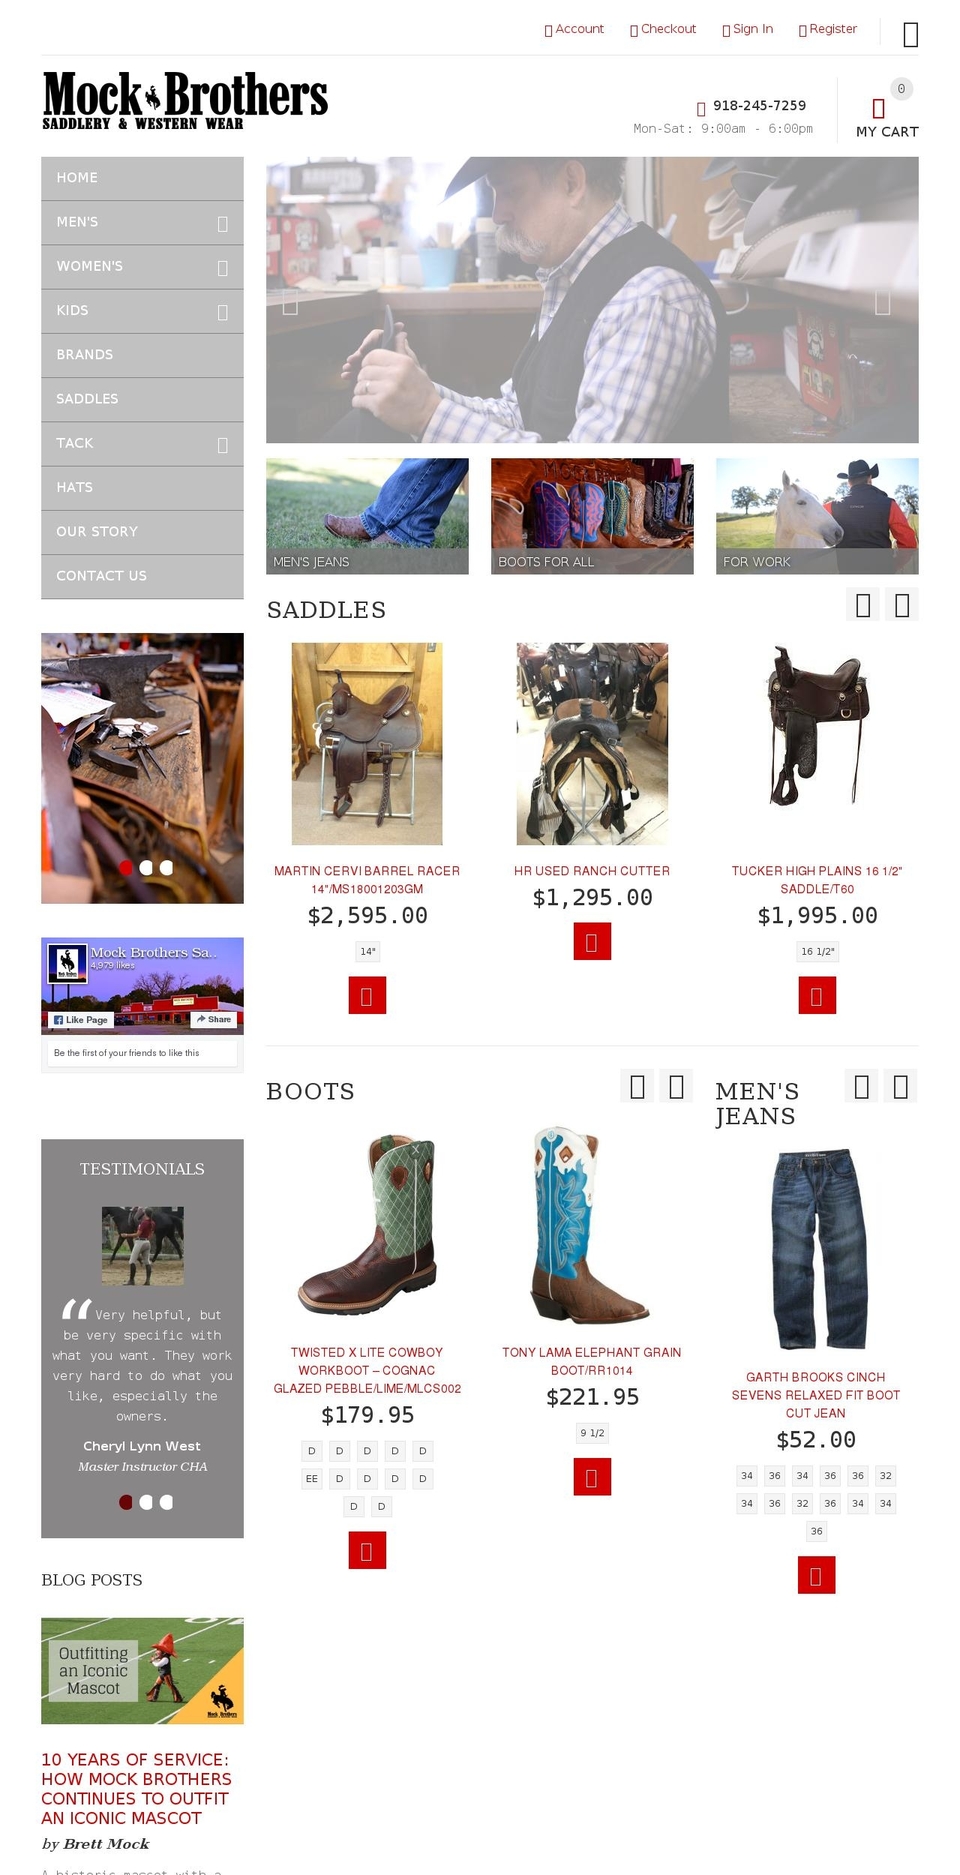 install-me-yourstore-v2-1-7 Shopify theme site example mockbros.com